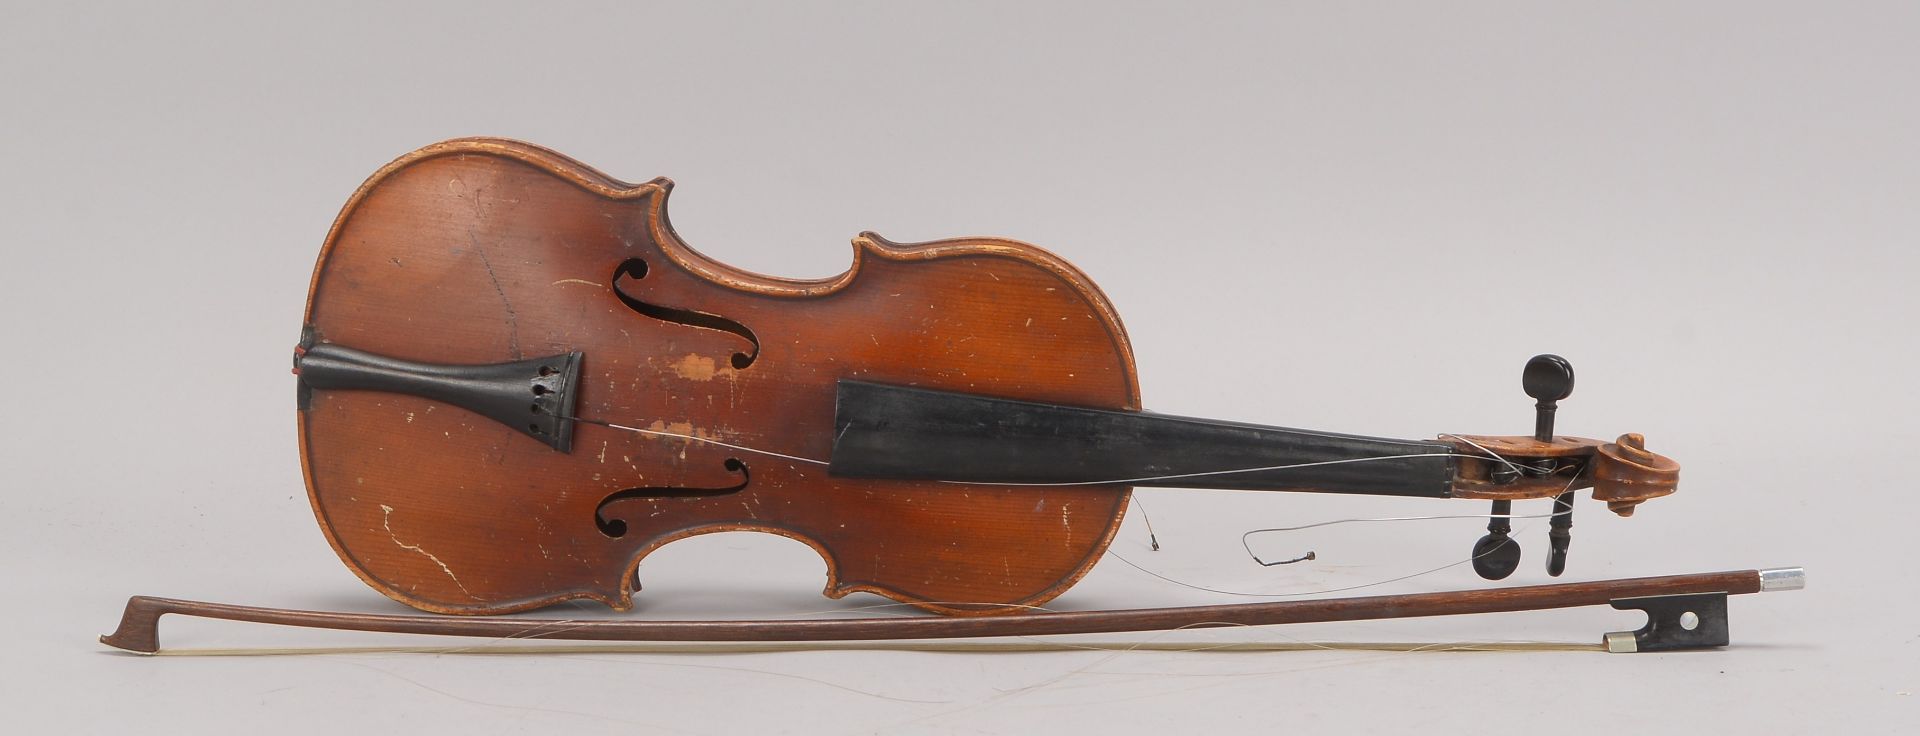 Geige, Innenkorpus mit bezeichnetem Etikett: -Antonius Stradivarius Cremonensis Faciebat Anno 1725-,